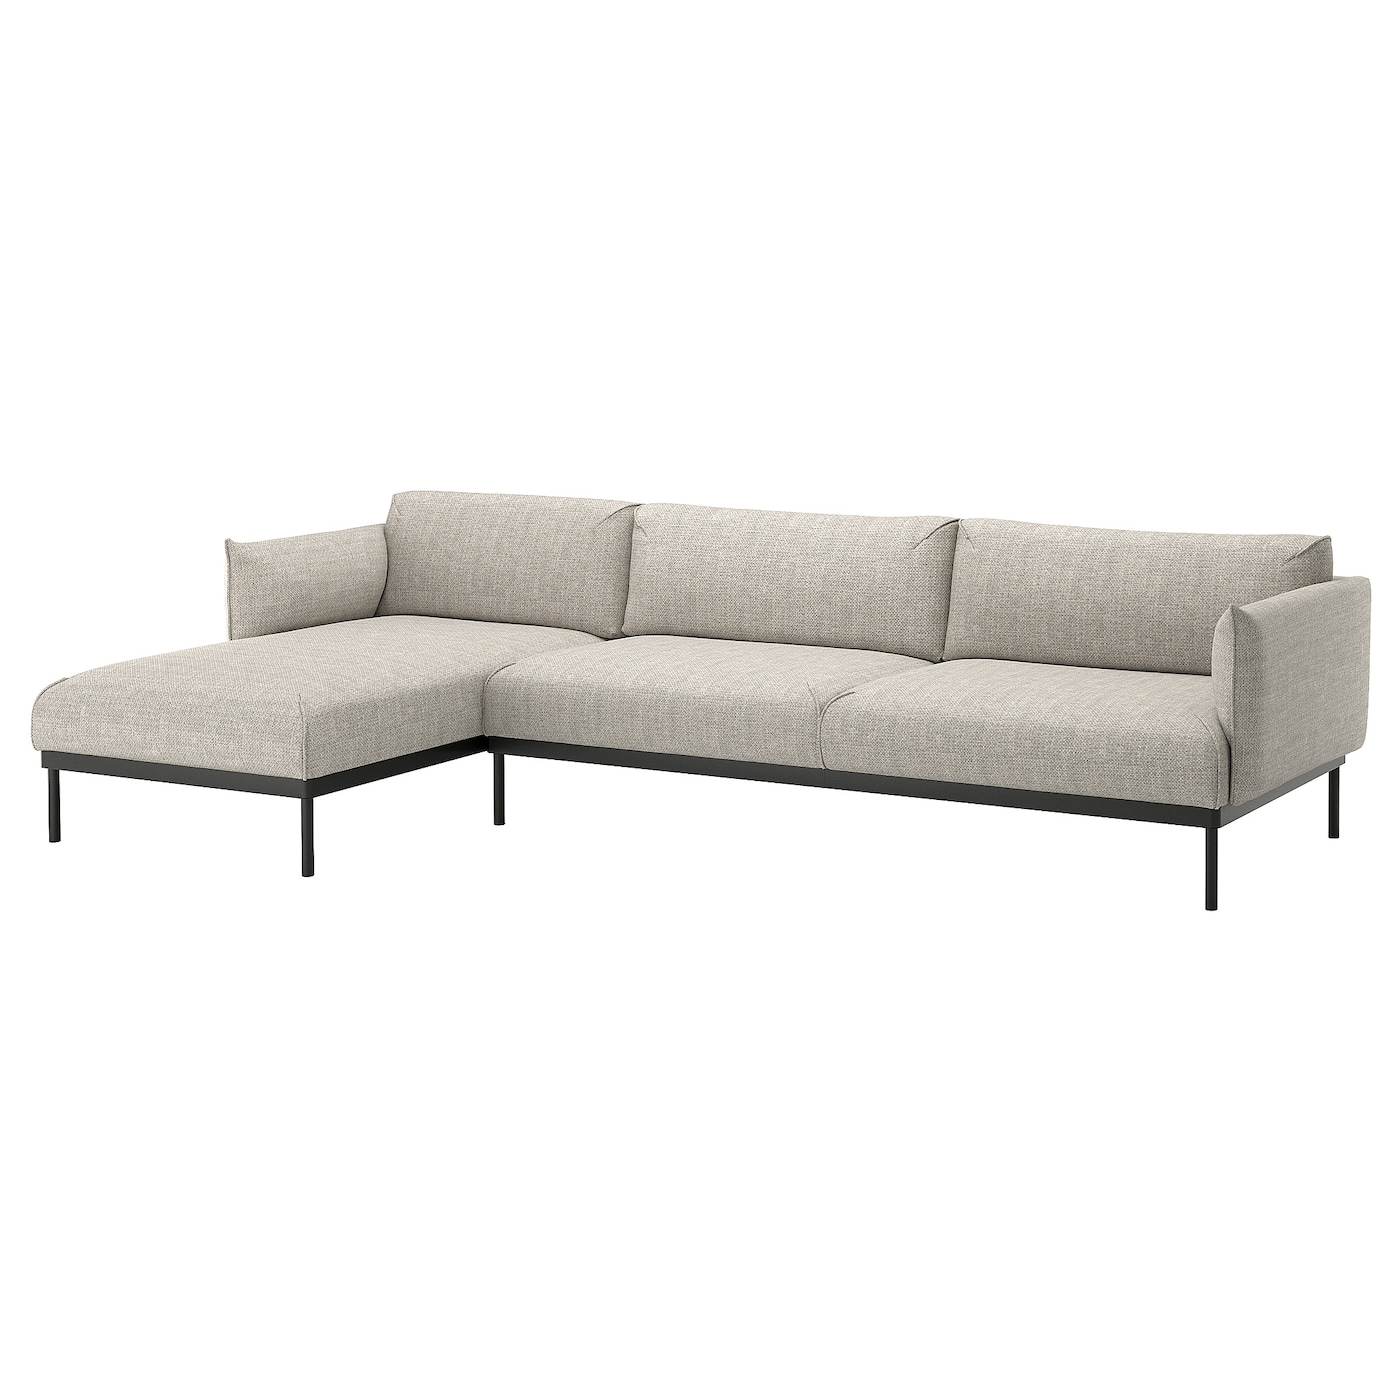 ЭПЛАРИД 4-местный диван + диван, Лейде светло-серый ÄPPLARYD IKEA